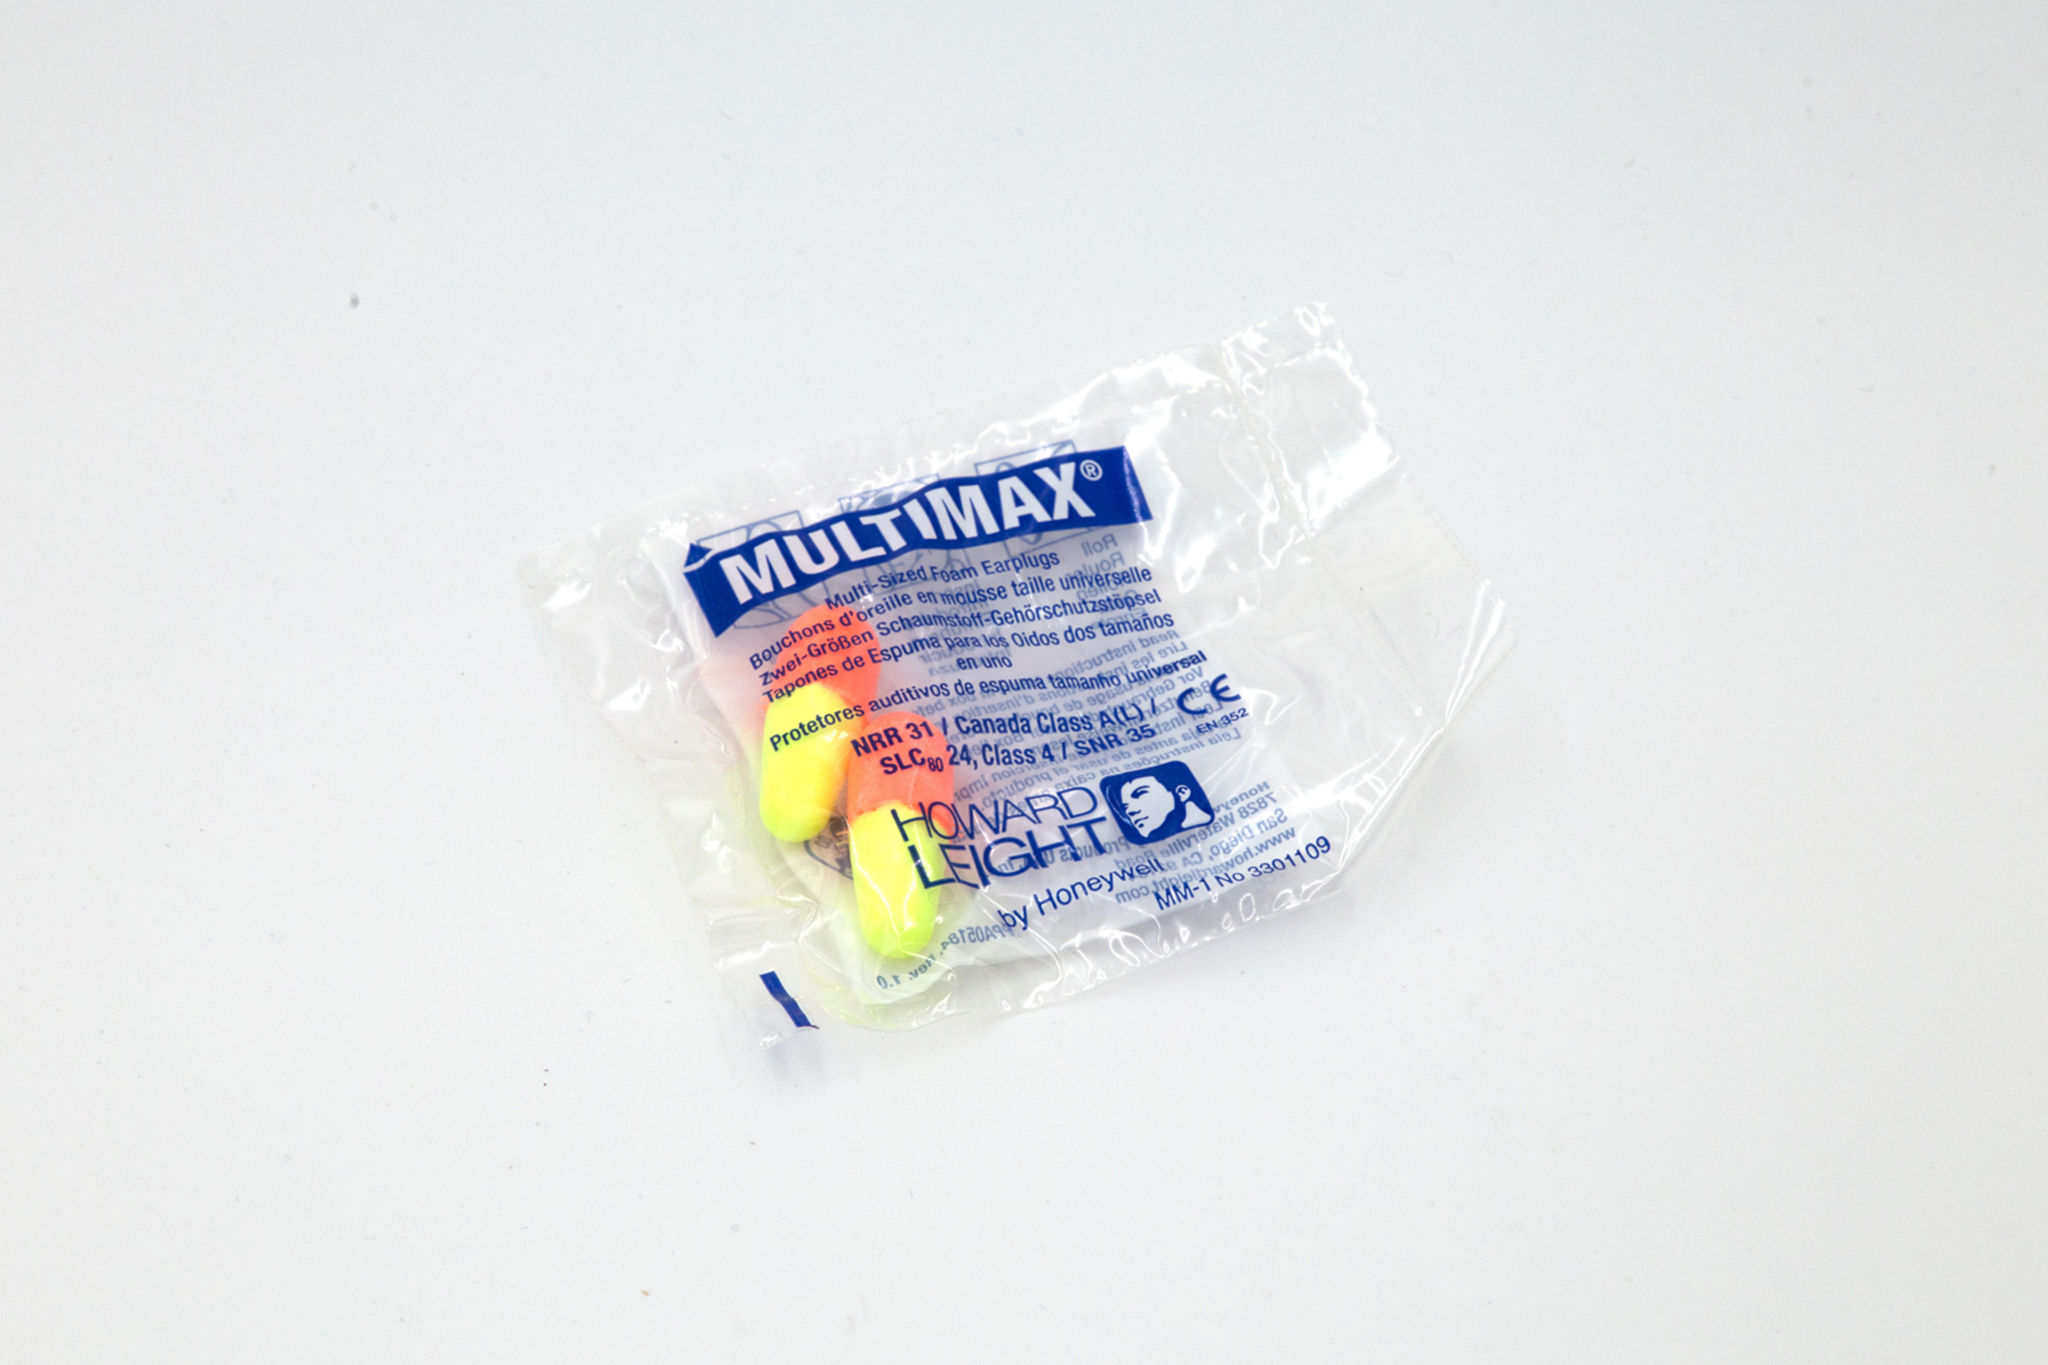 Yellow and orange earplugs in plastic bag